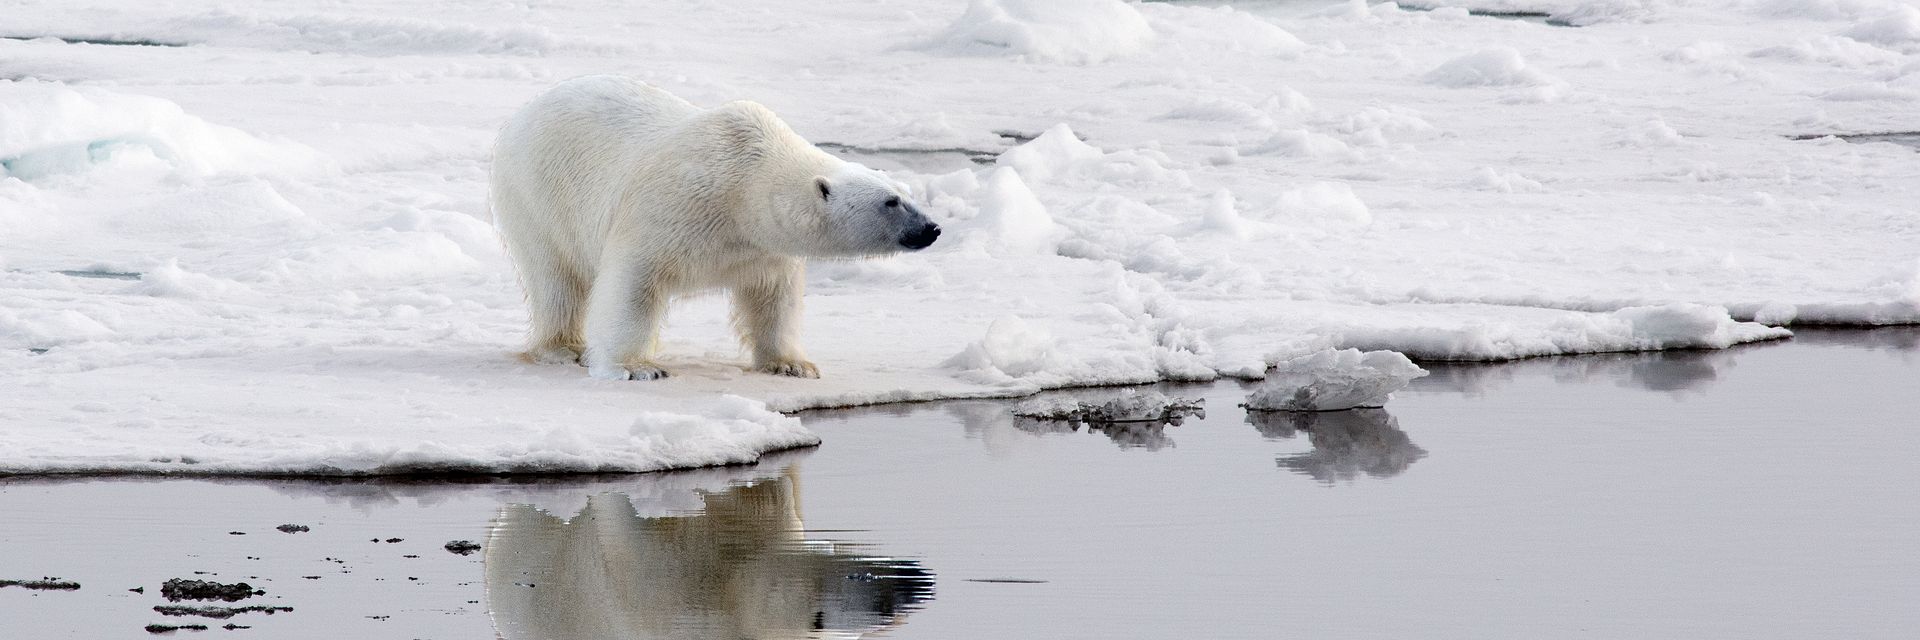 The Arctic&#58; Home of the Polar Bears